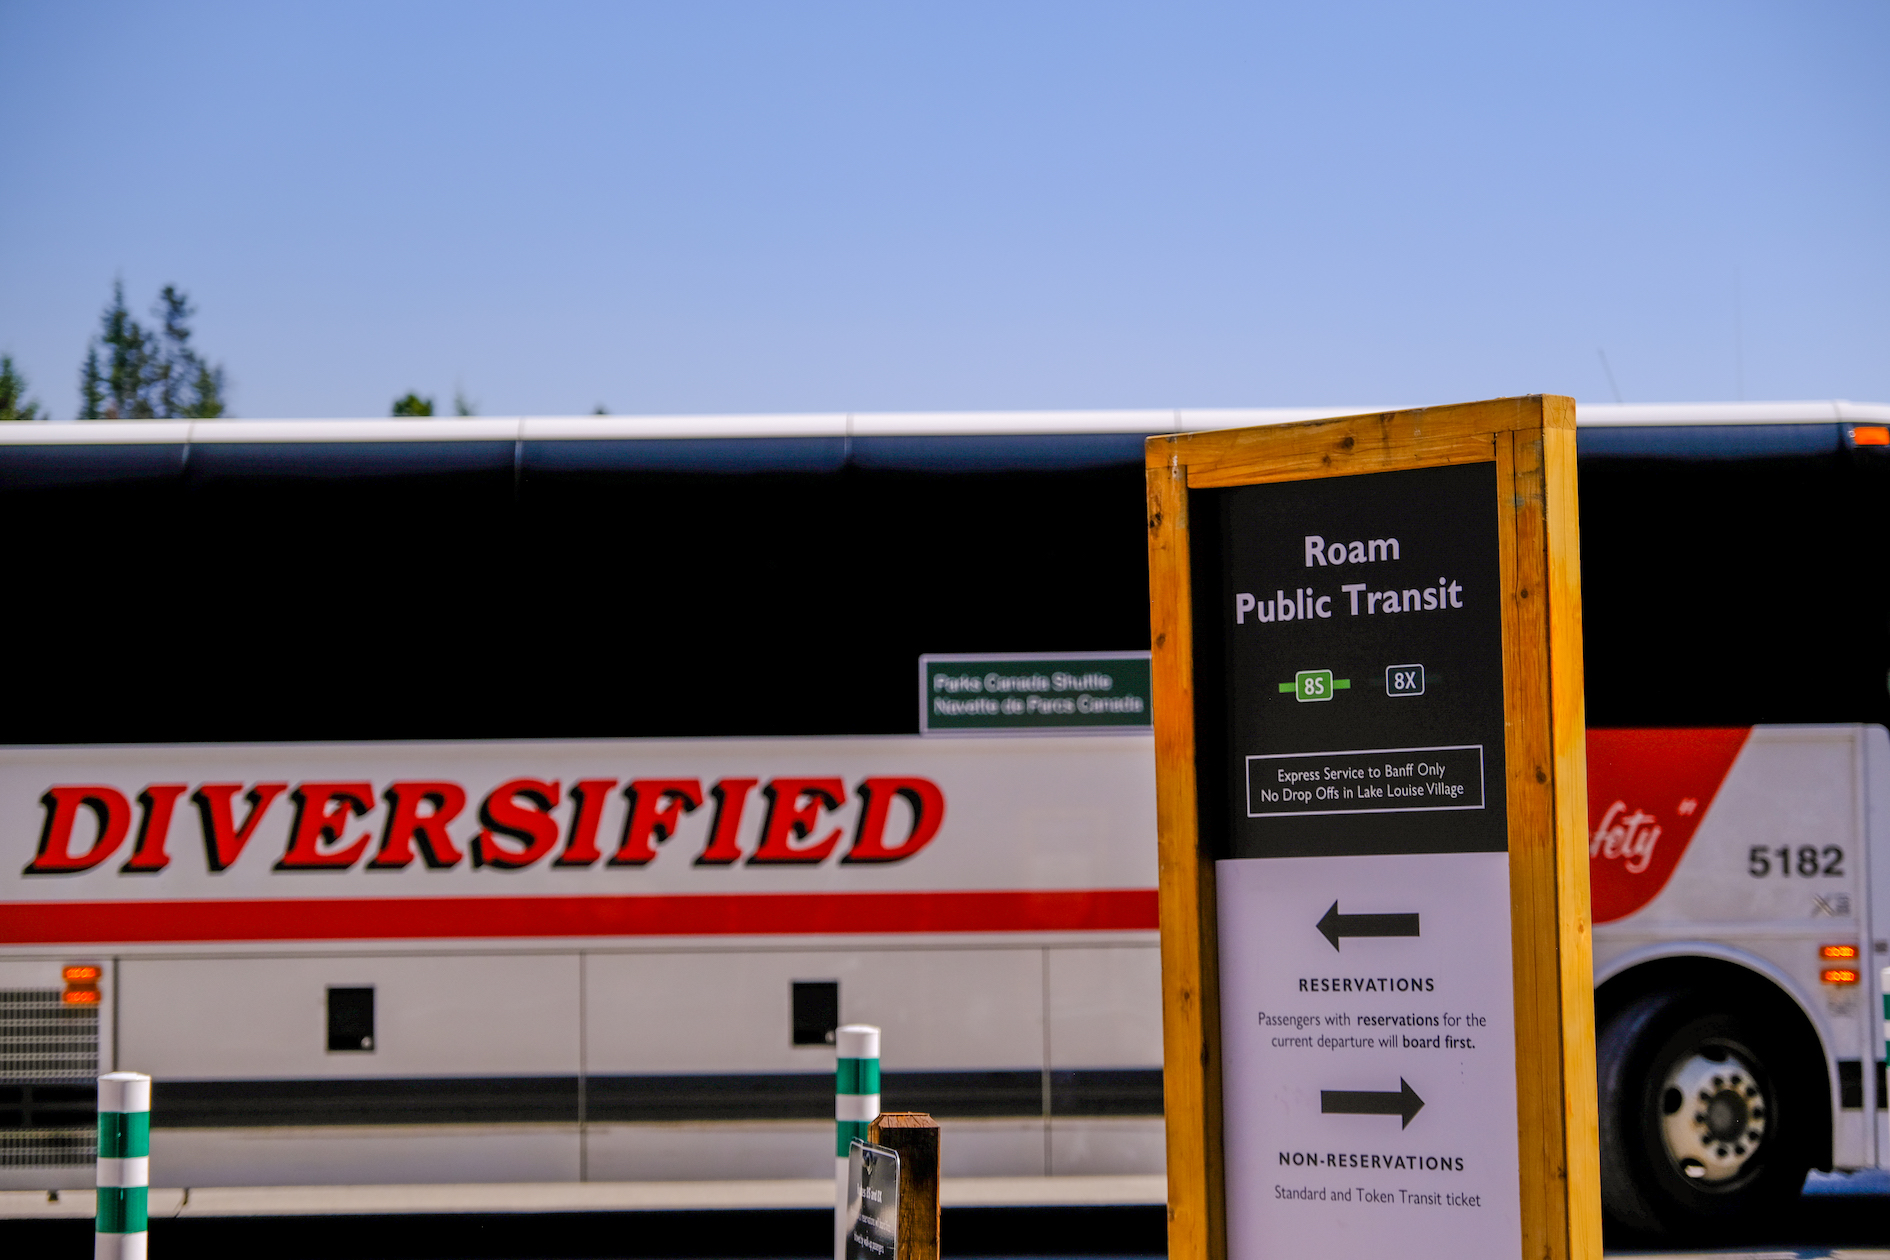 Public Transit Option: ROAM Transit to Lake Louise